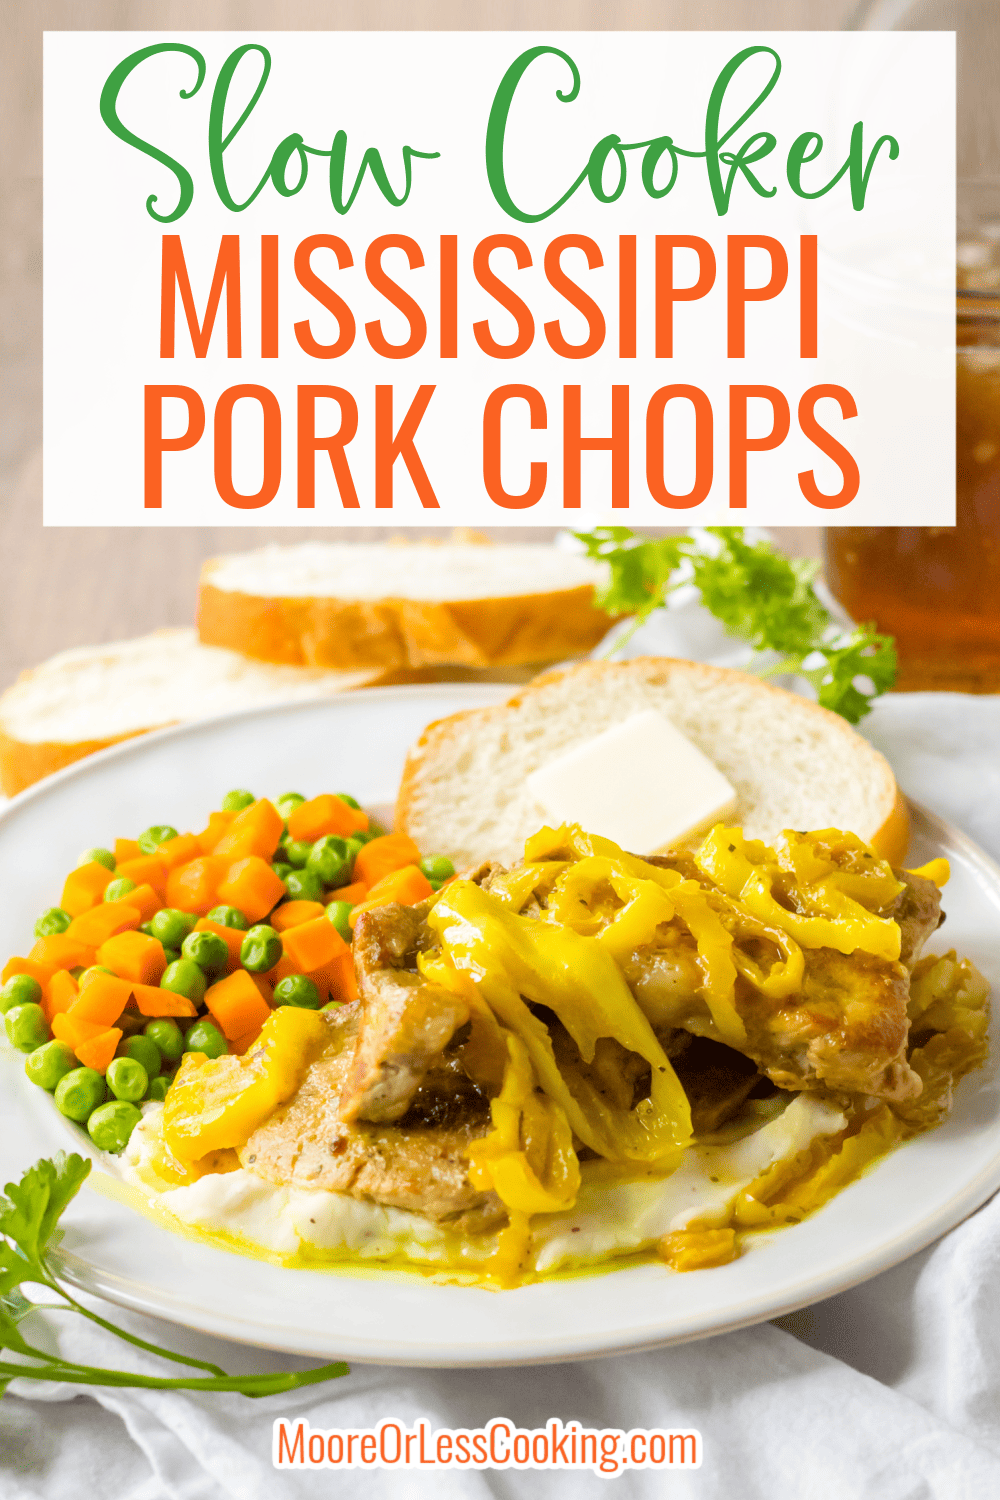 Slow Cooker Mississippi Pork Chops
